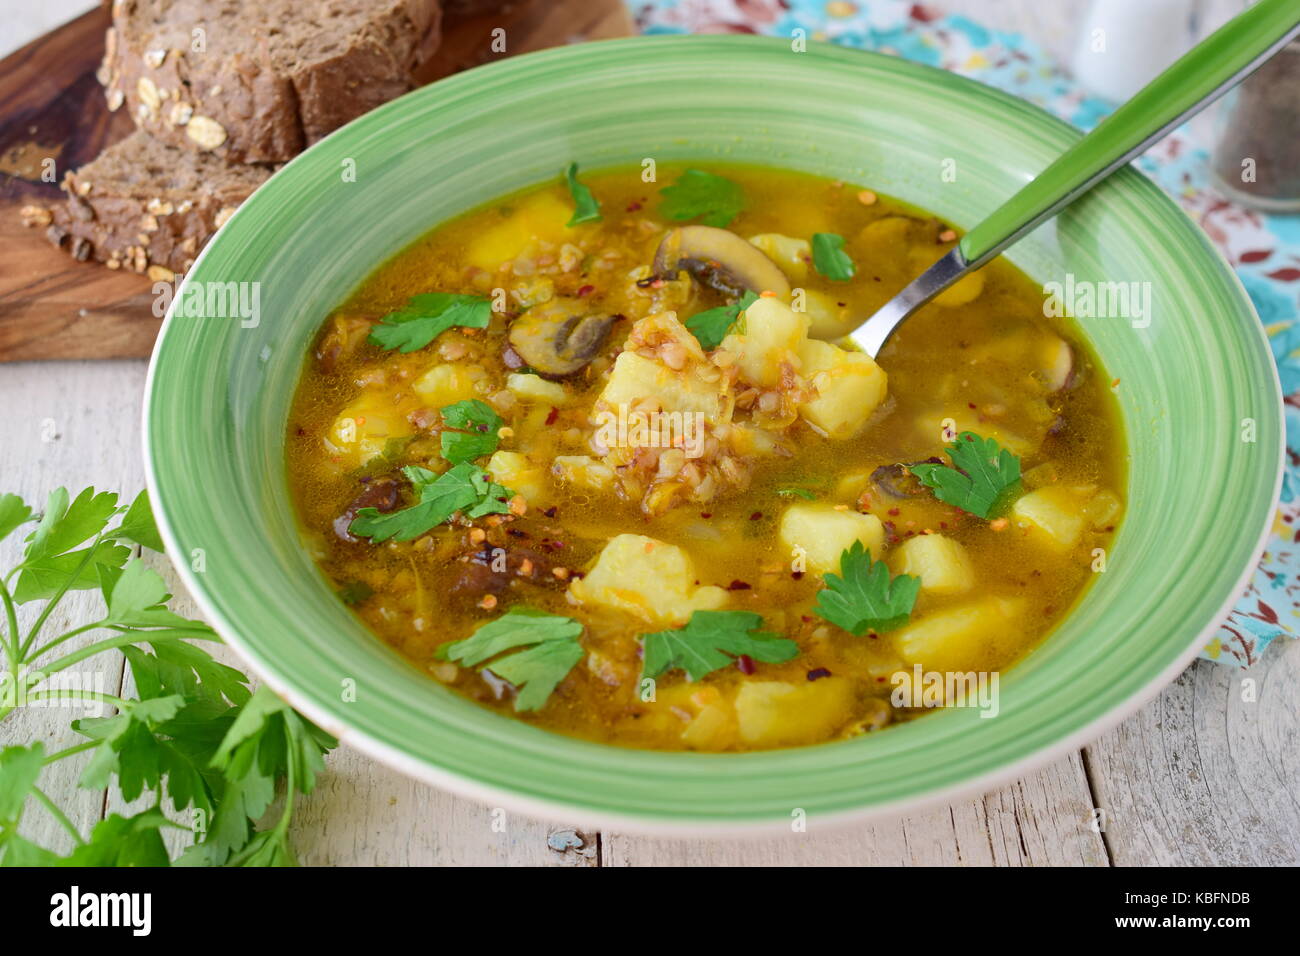 Una sana zuppa di grano saraceno, di fecola di patate, i funghi, la carota e la cipolla wit di olio di oliva in una ciotola verde su uno sfondo di legno. Foto Stock